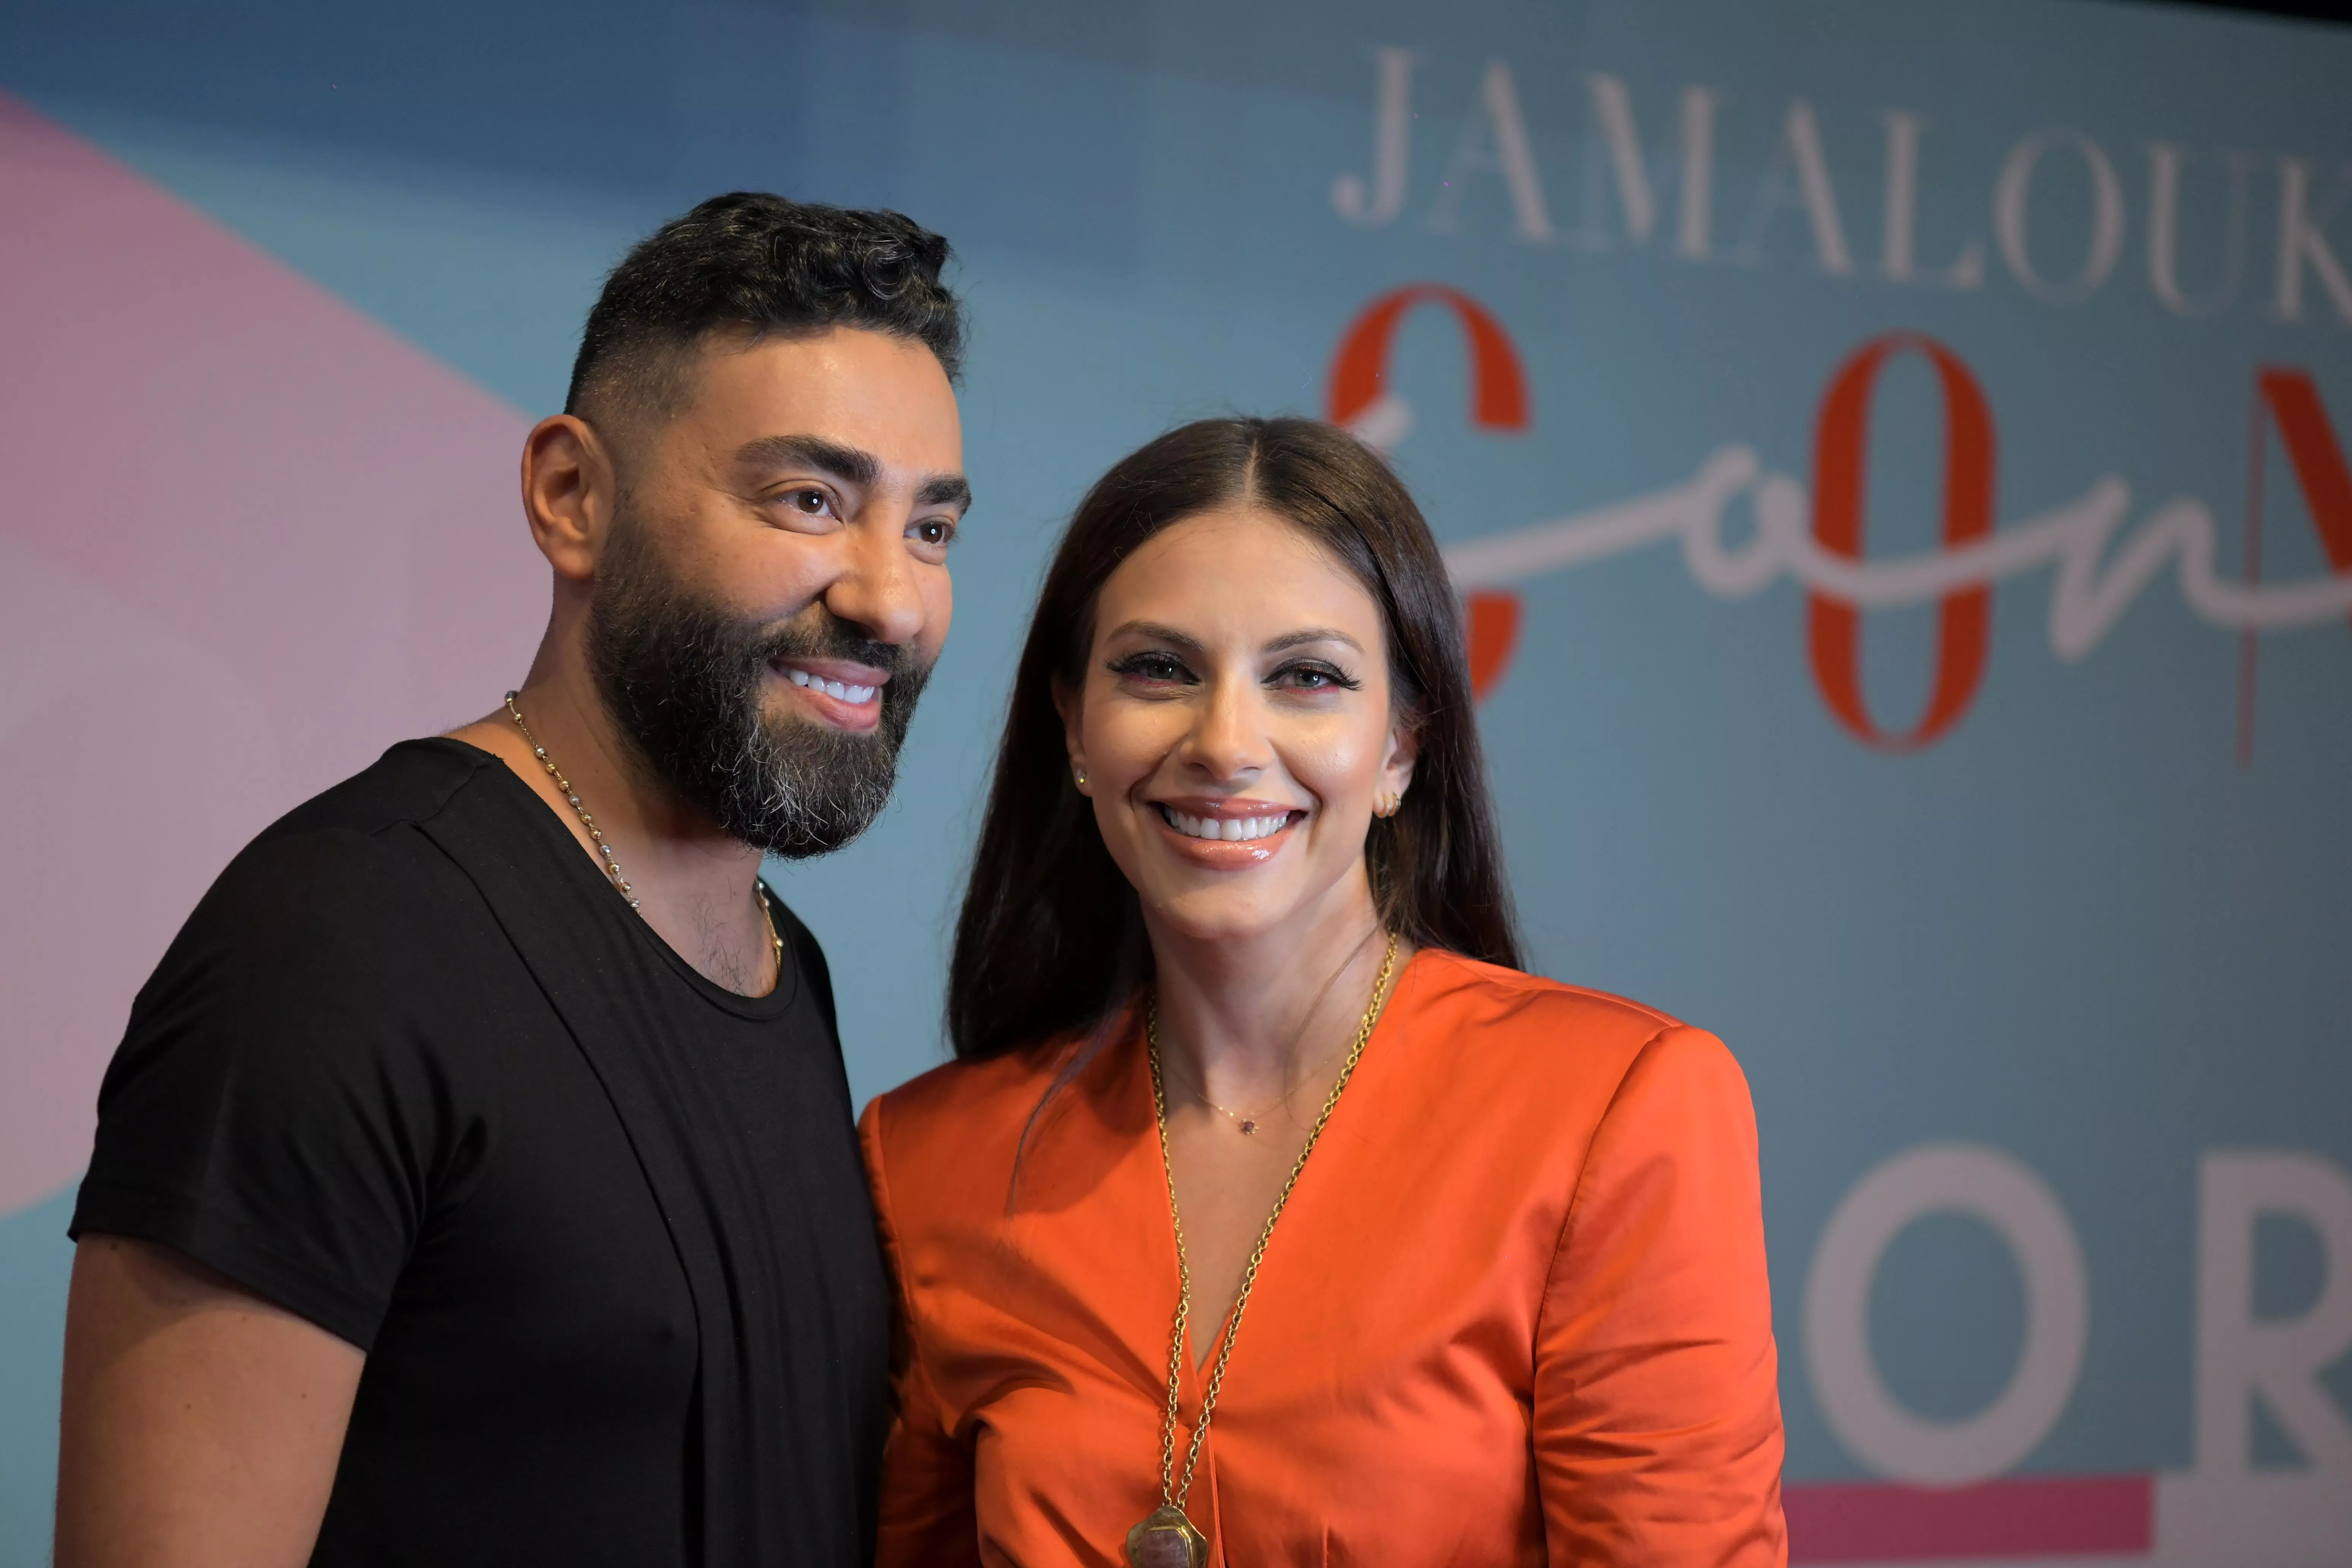 JamaloukiCon 2019: تفاصيل ورشات العمل التي حصلت في مهرجان الموضة والجمال الأهمّ عربياً